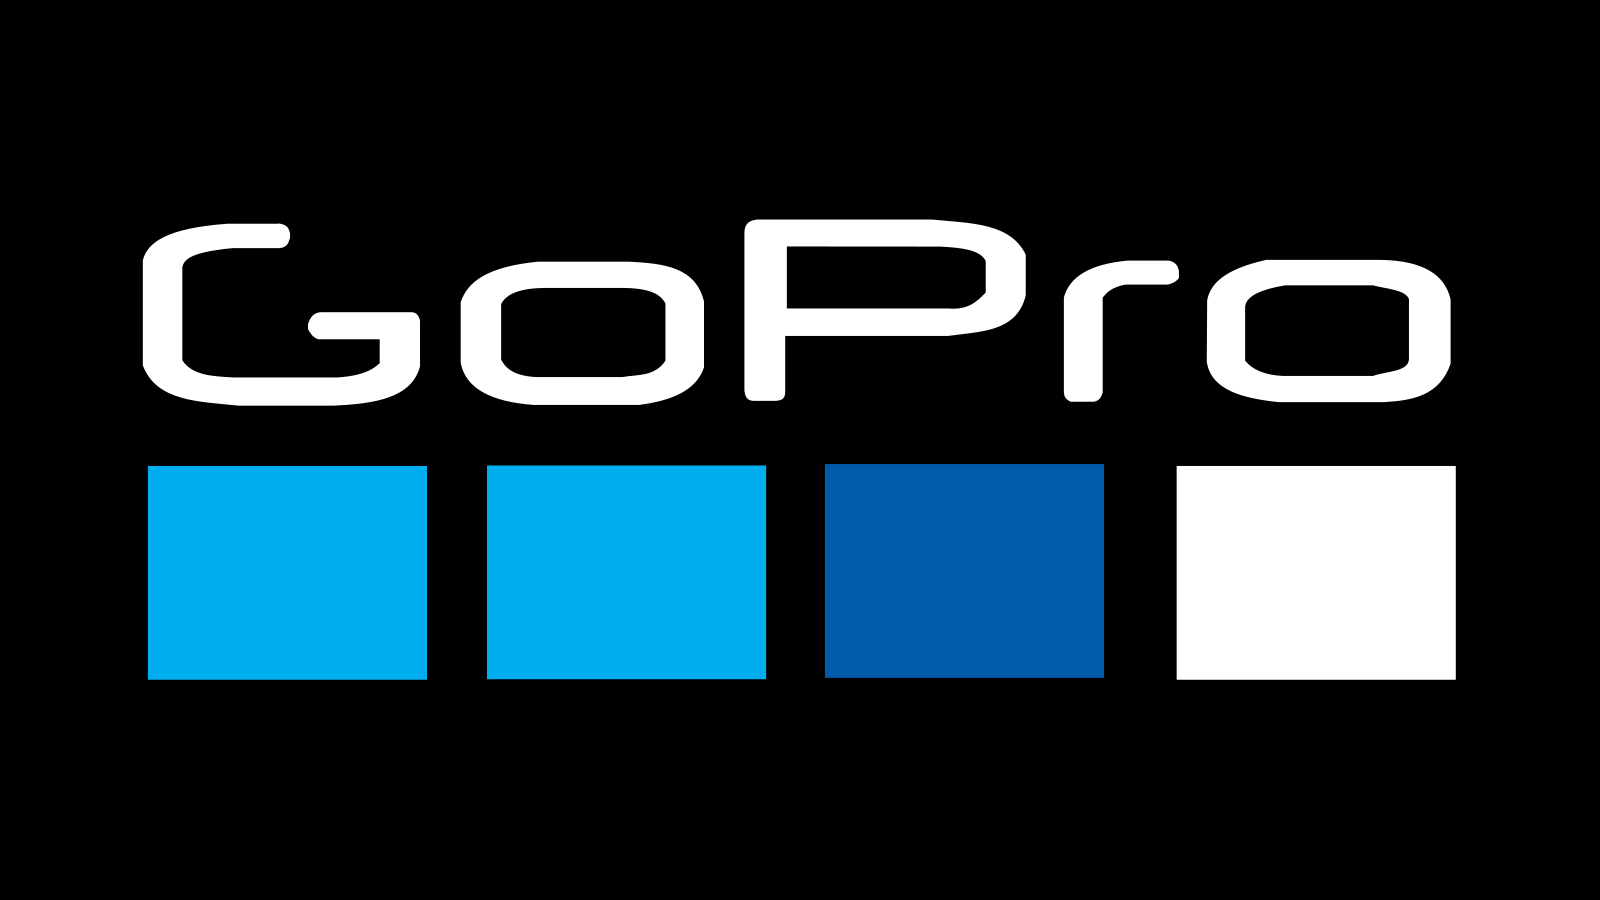 Logo Gopro La Historia Y El Significado Del Logotipo Vrogue Co